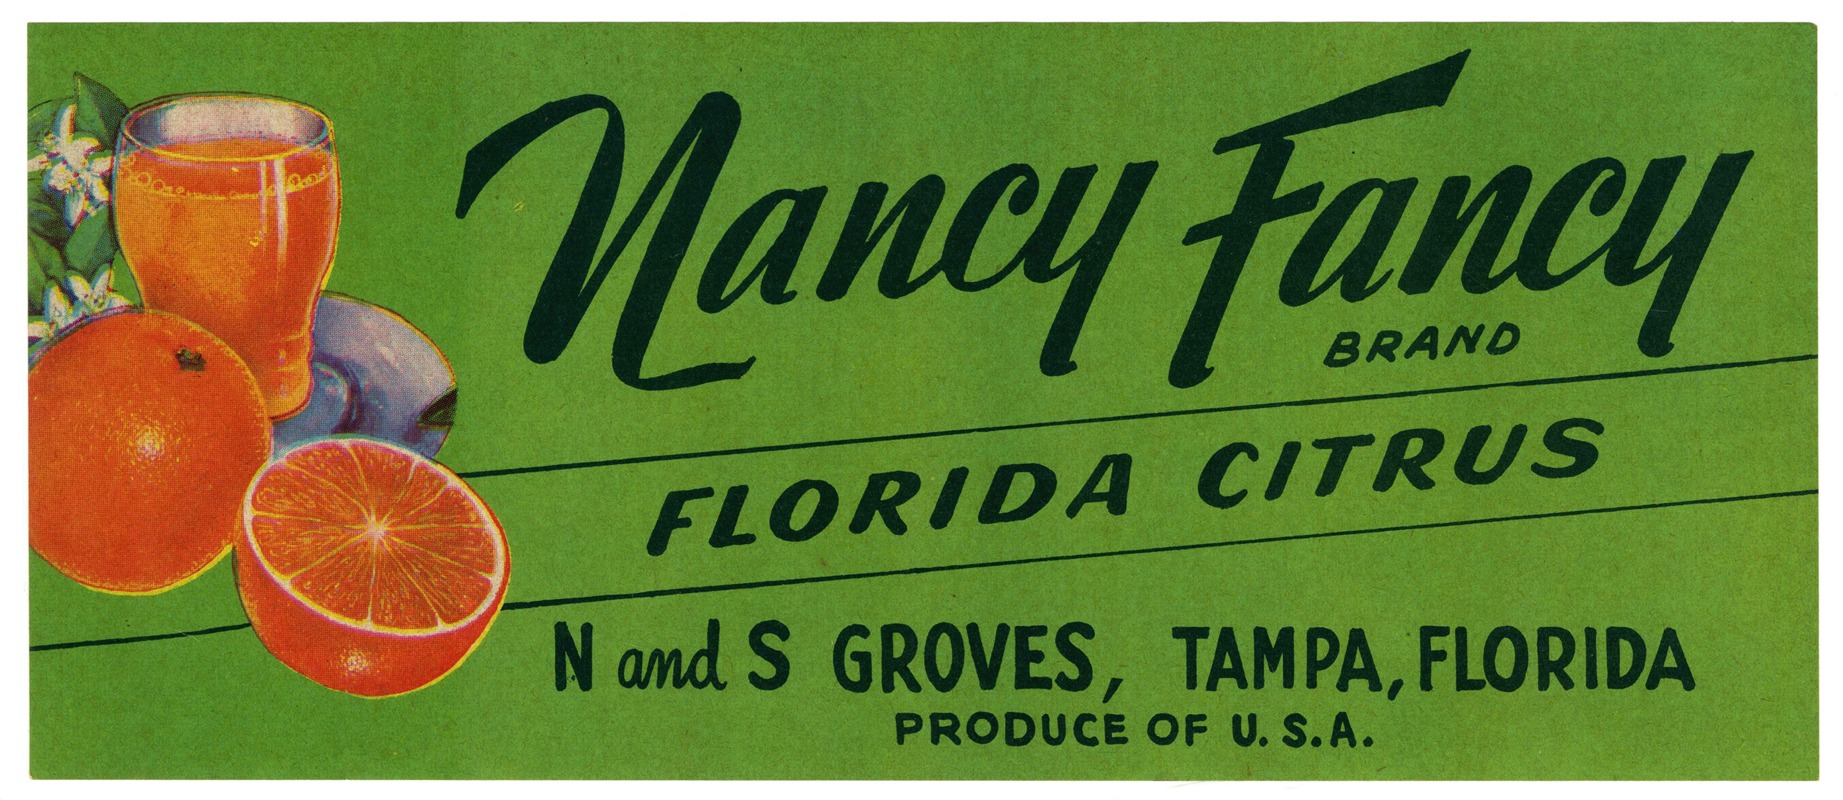 Anonymous - Nancy Fancy Brand Florida Citrus Label